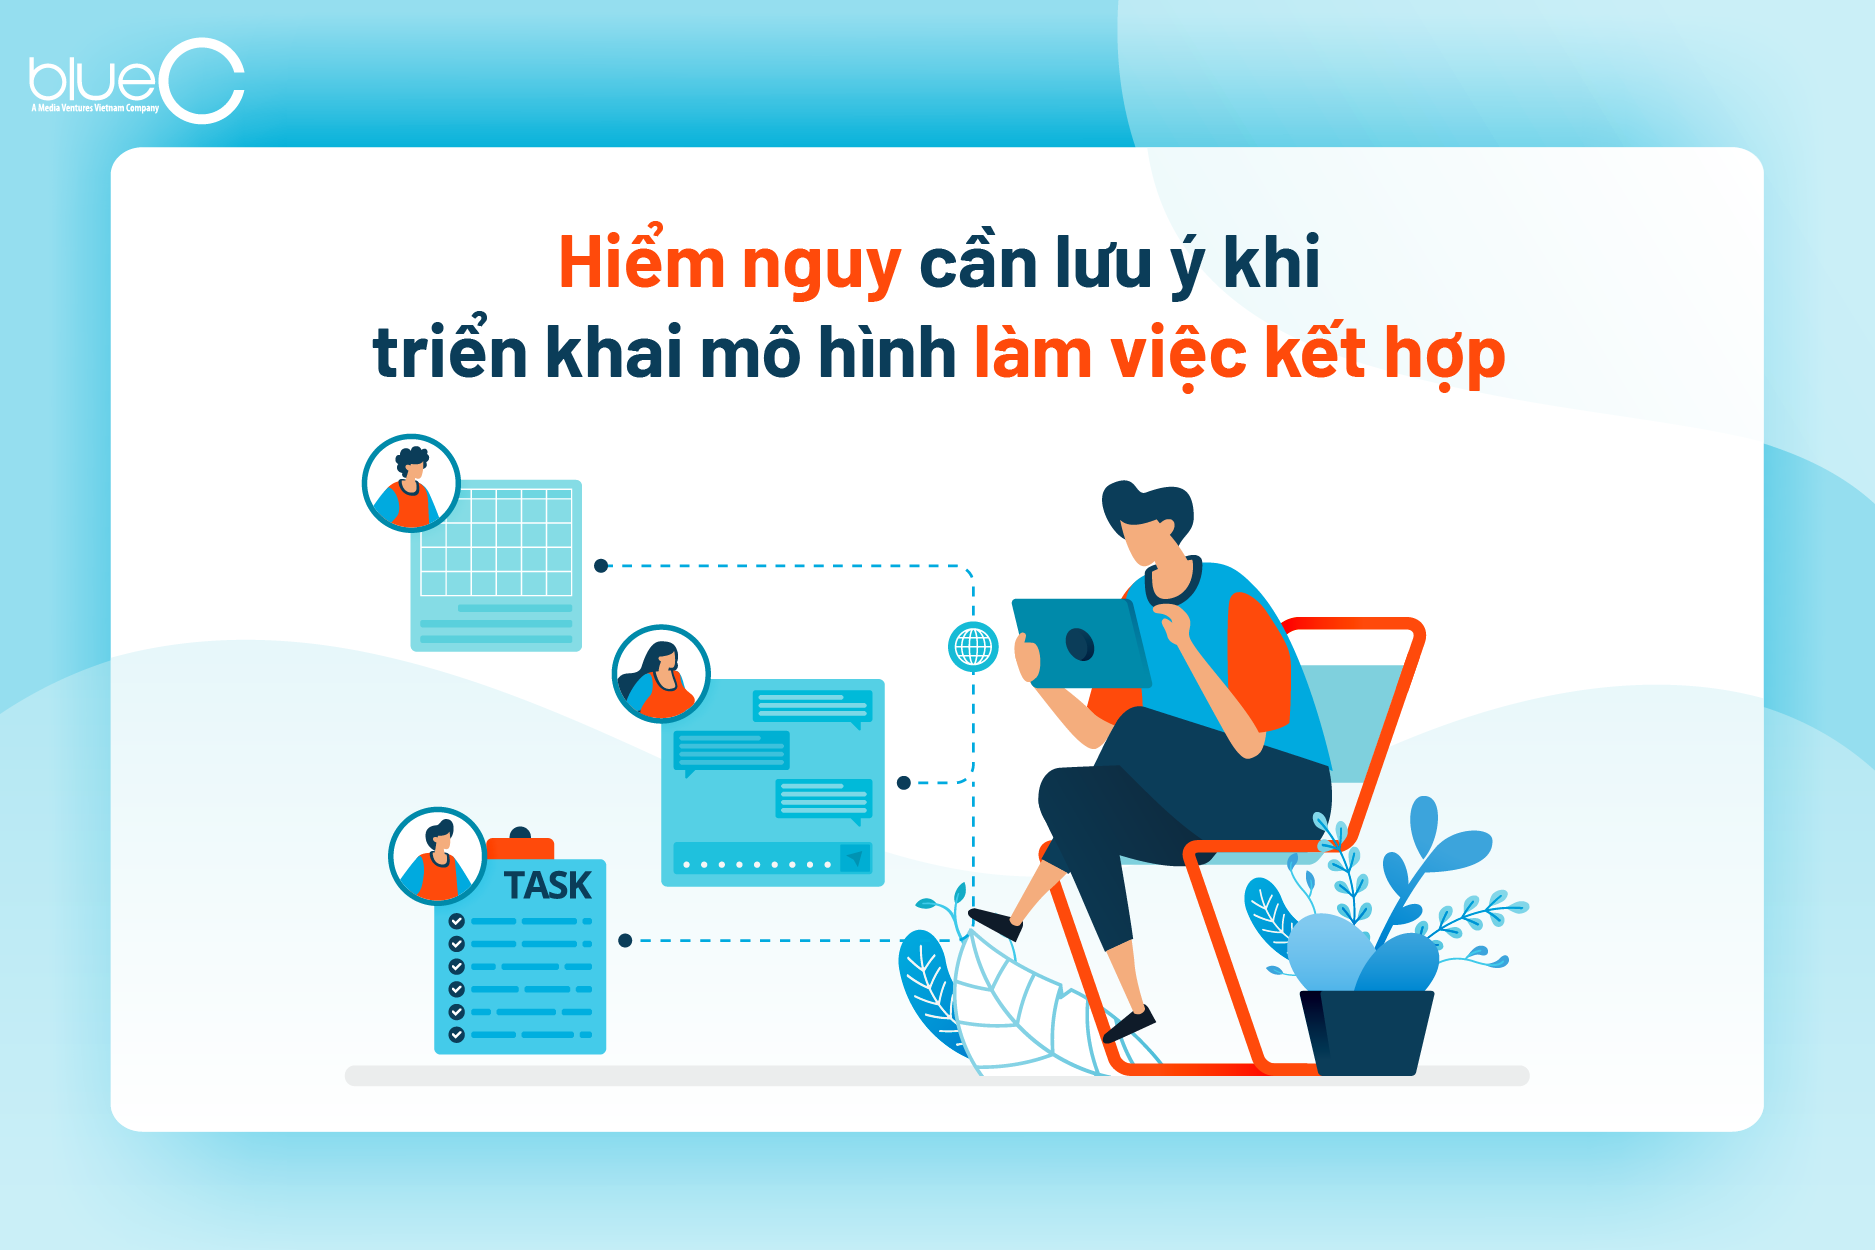 Ứng dụng Baemin chính thức triển khai mô hình làm việc hybrid working dài  hạn  Tạp chí Kinh tế Sài Gòn